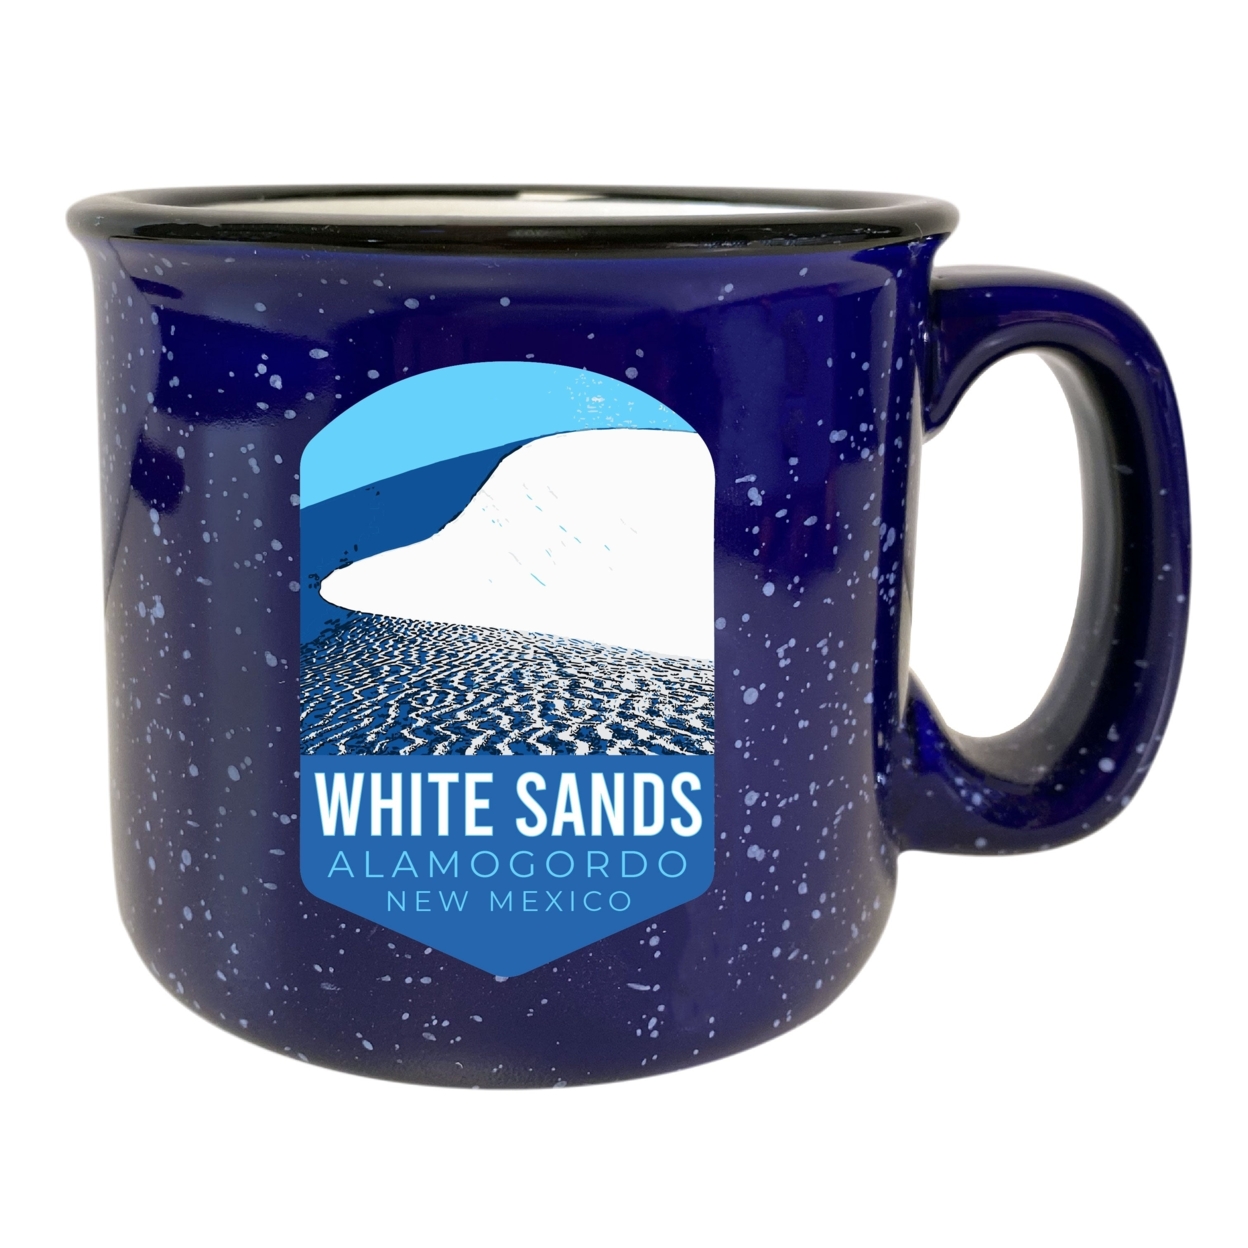 White Sands Alamogordo New Mexico 16 Oz Navy Speckled Ceramic Camper Coffee Mug Choice Of Design - Design A